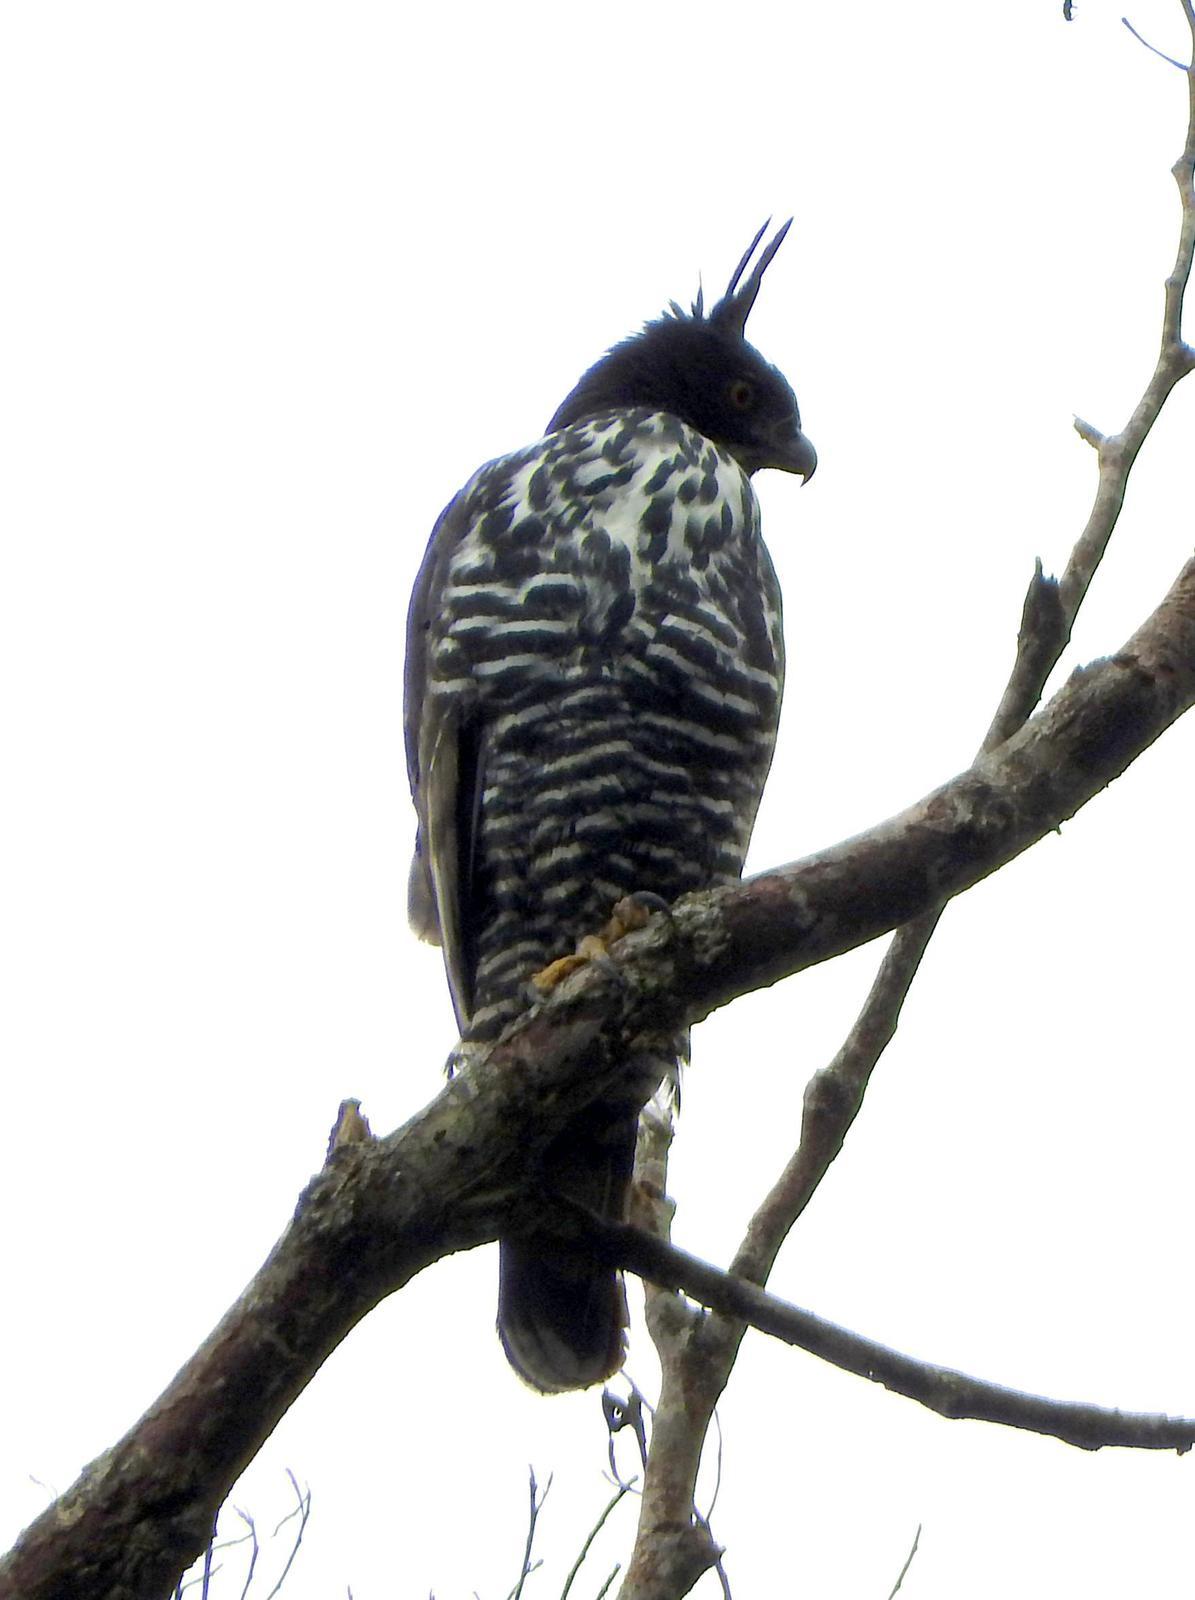 Blyth's Hawk-Eagle Photo by Todd A. Watkins